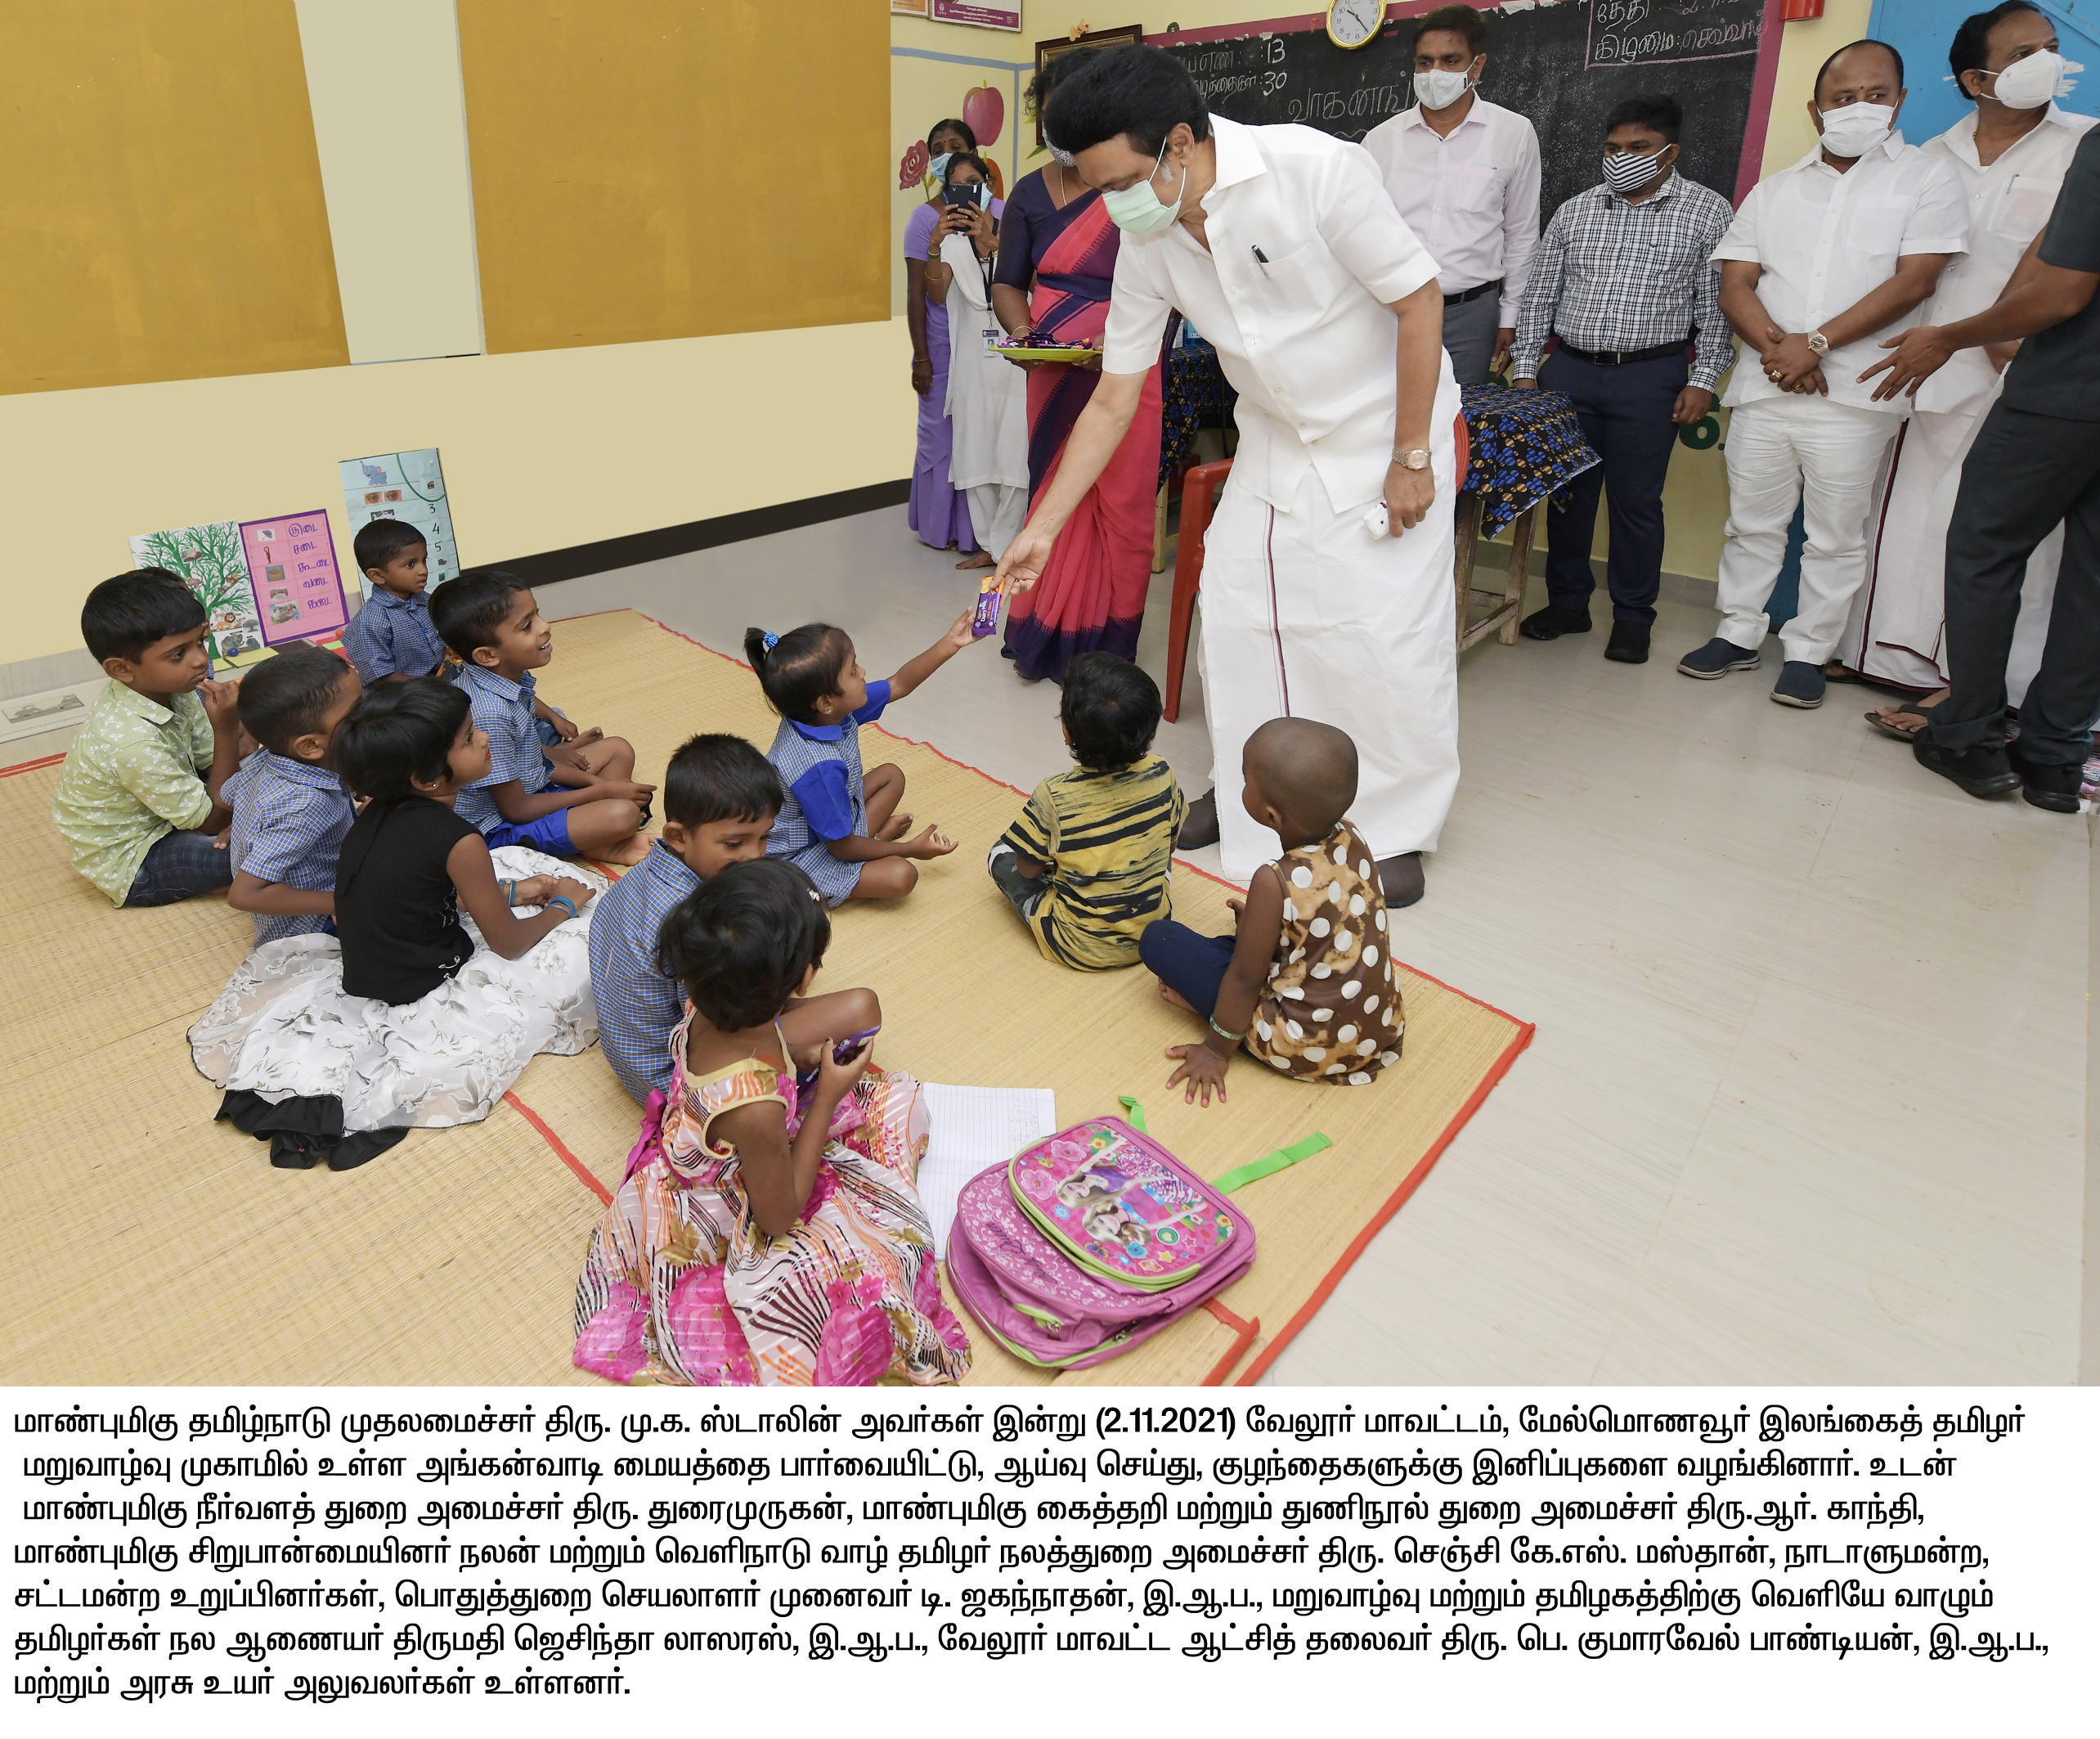 मुख्यमंत्री ने श्रीलंकन तमिलों के लिए घरों का किया शुभारंभ